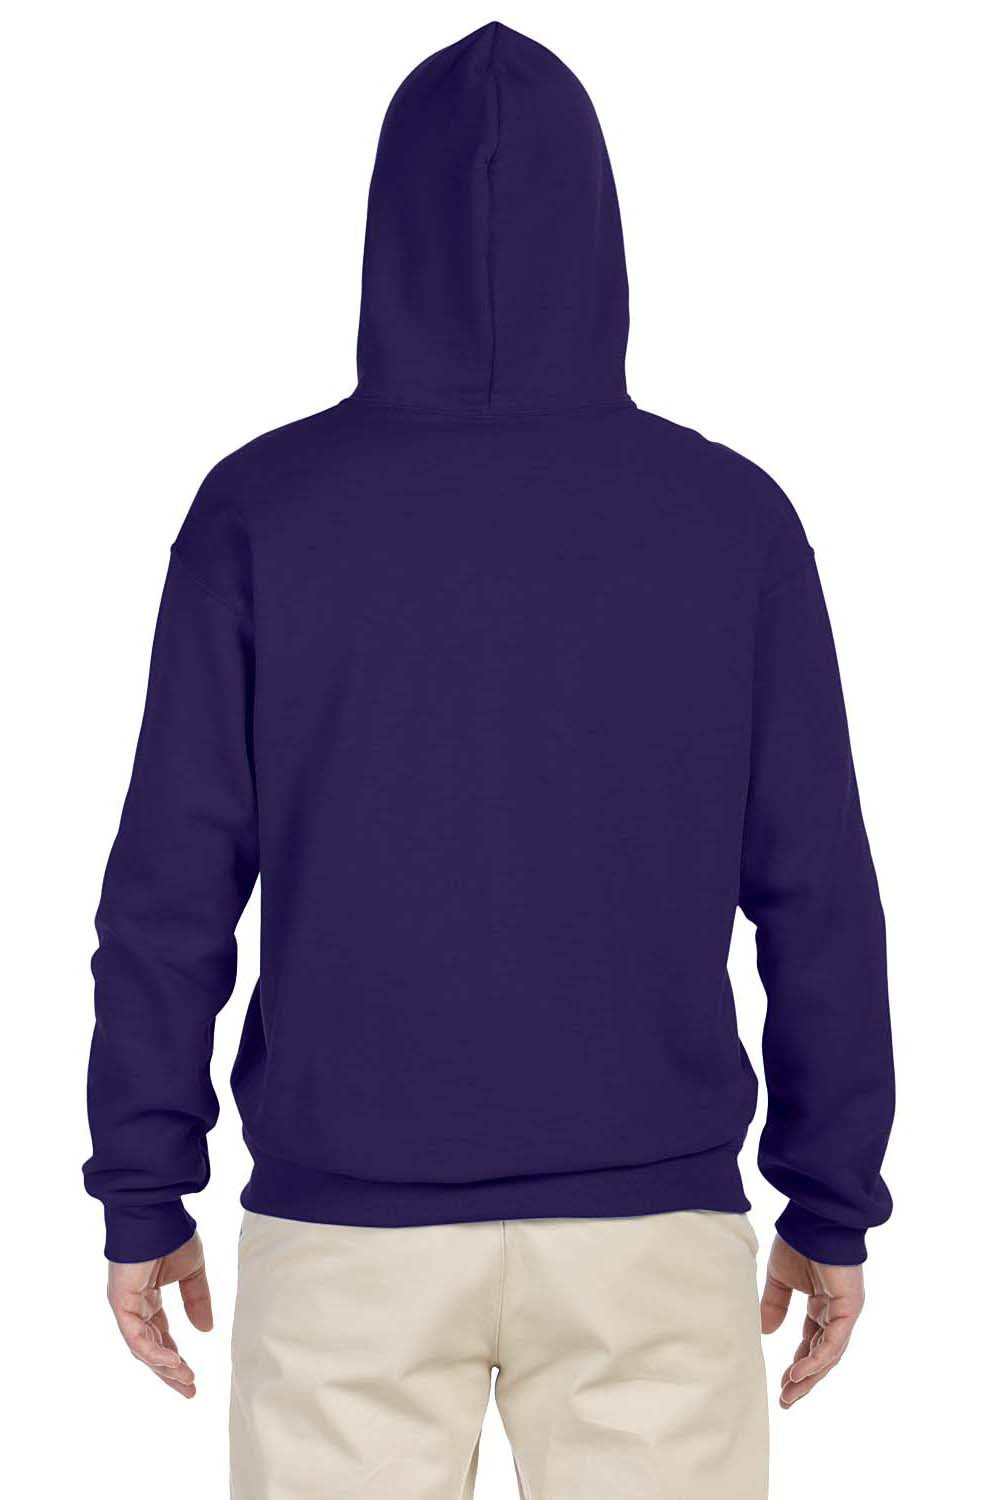 Jerzees 996 Mens NuBlend Fleece Hooded Sweatshirt Hoodie Purple Back